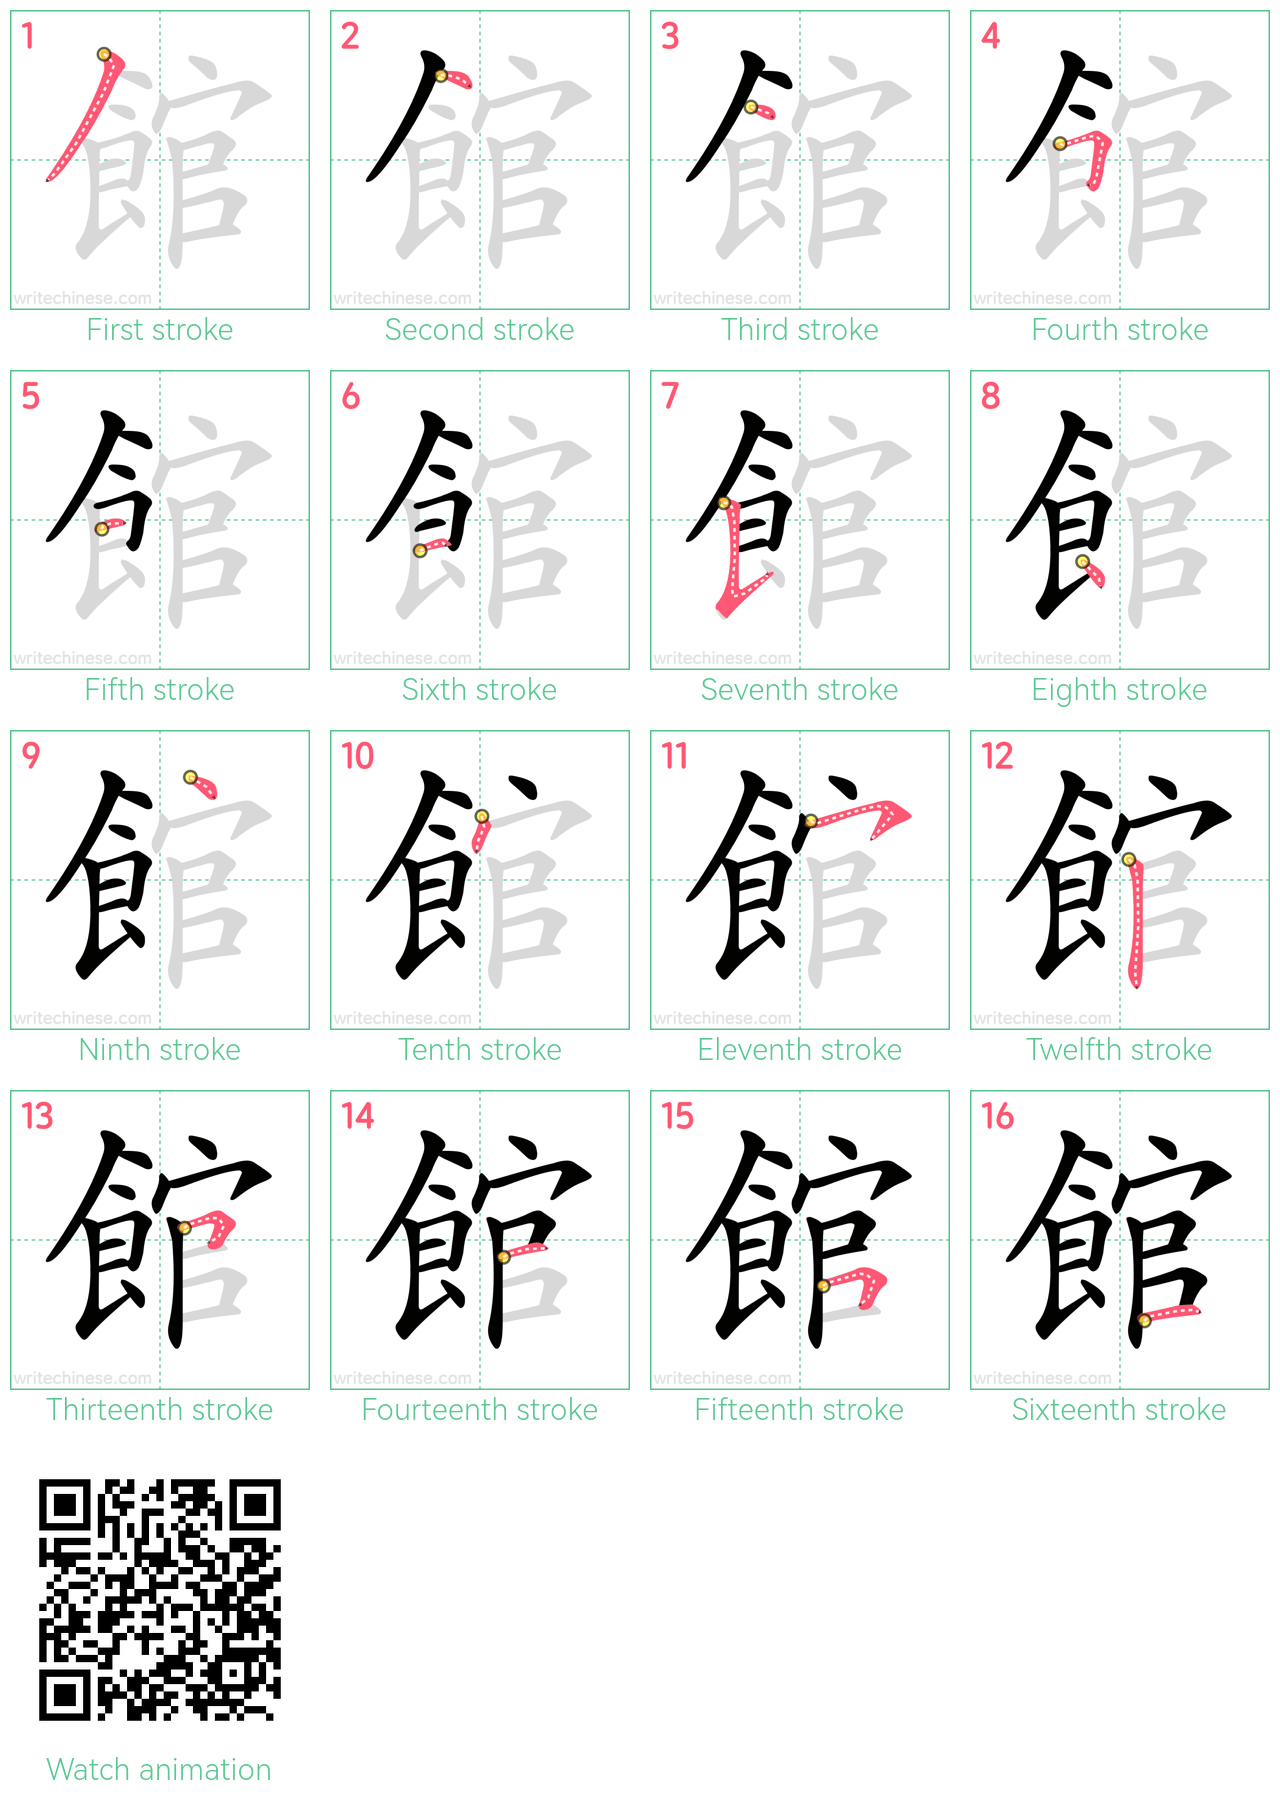 館 step-by-step stroke order diagrams